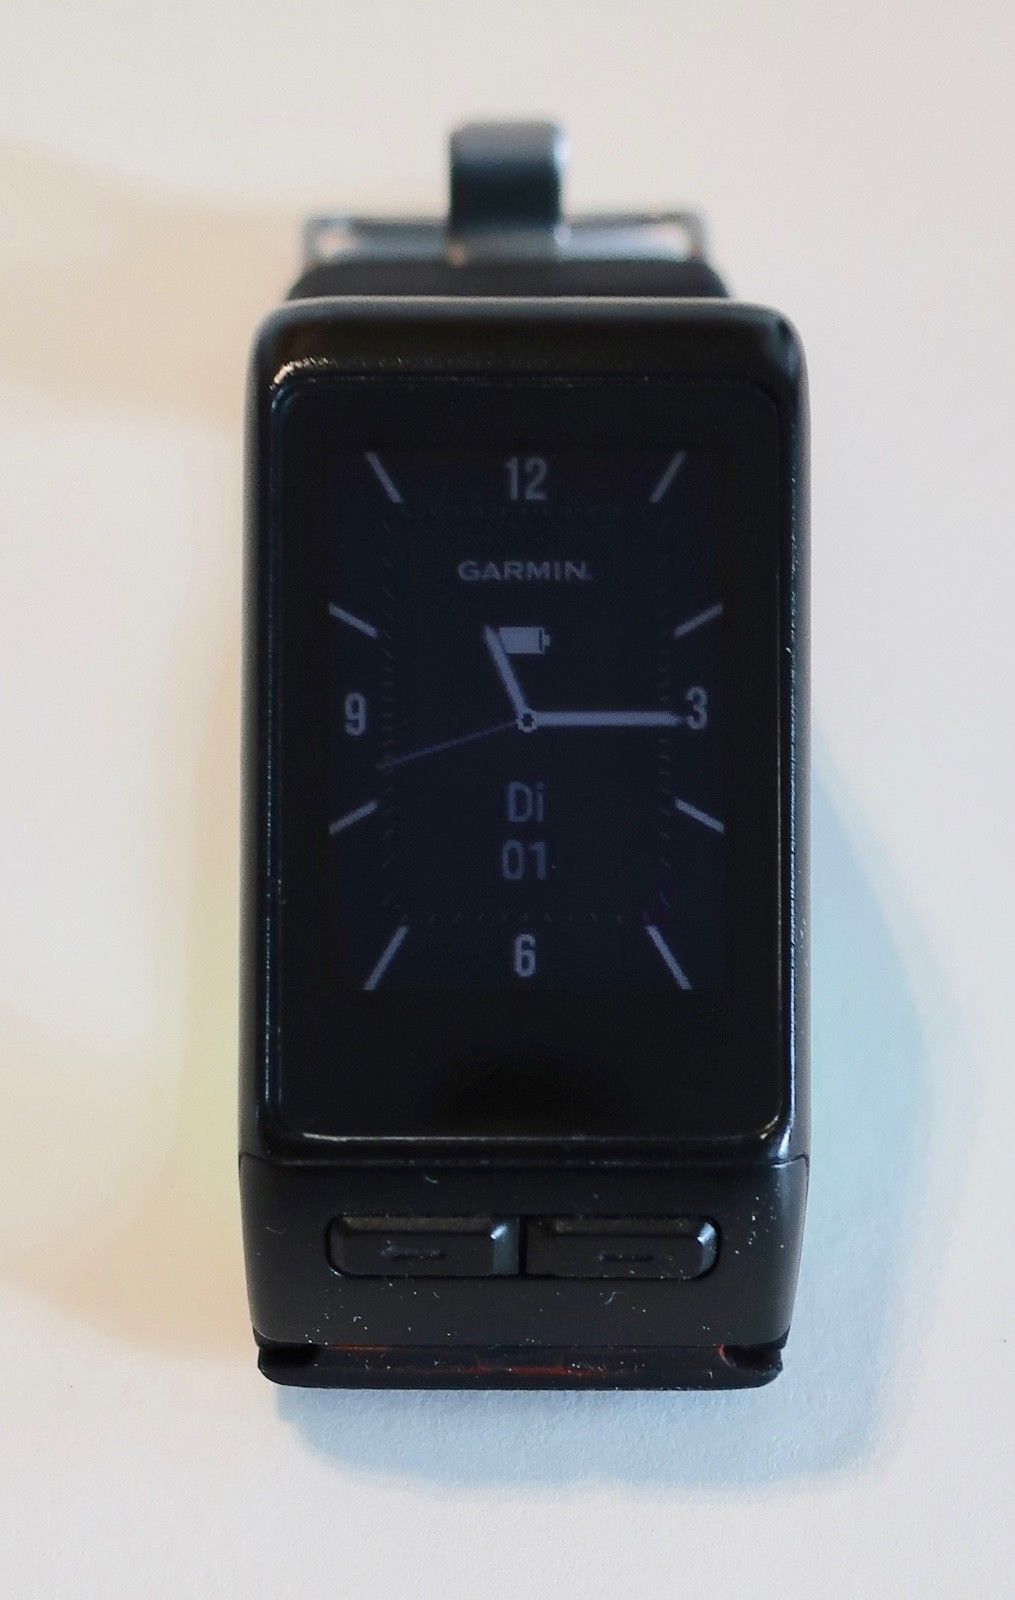 Garmin Vivoactive HR - smartwatch - GPS - Herzfrequenz - gebraucht in OVP